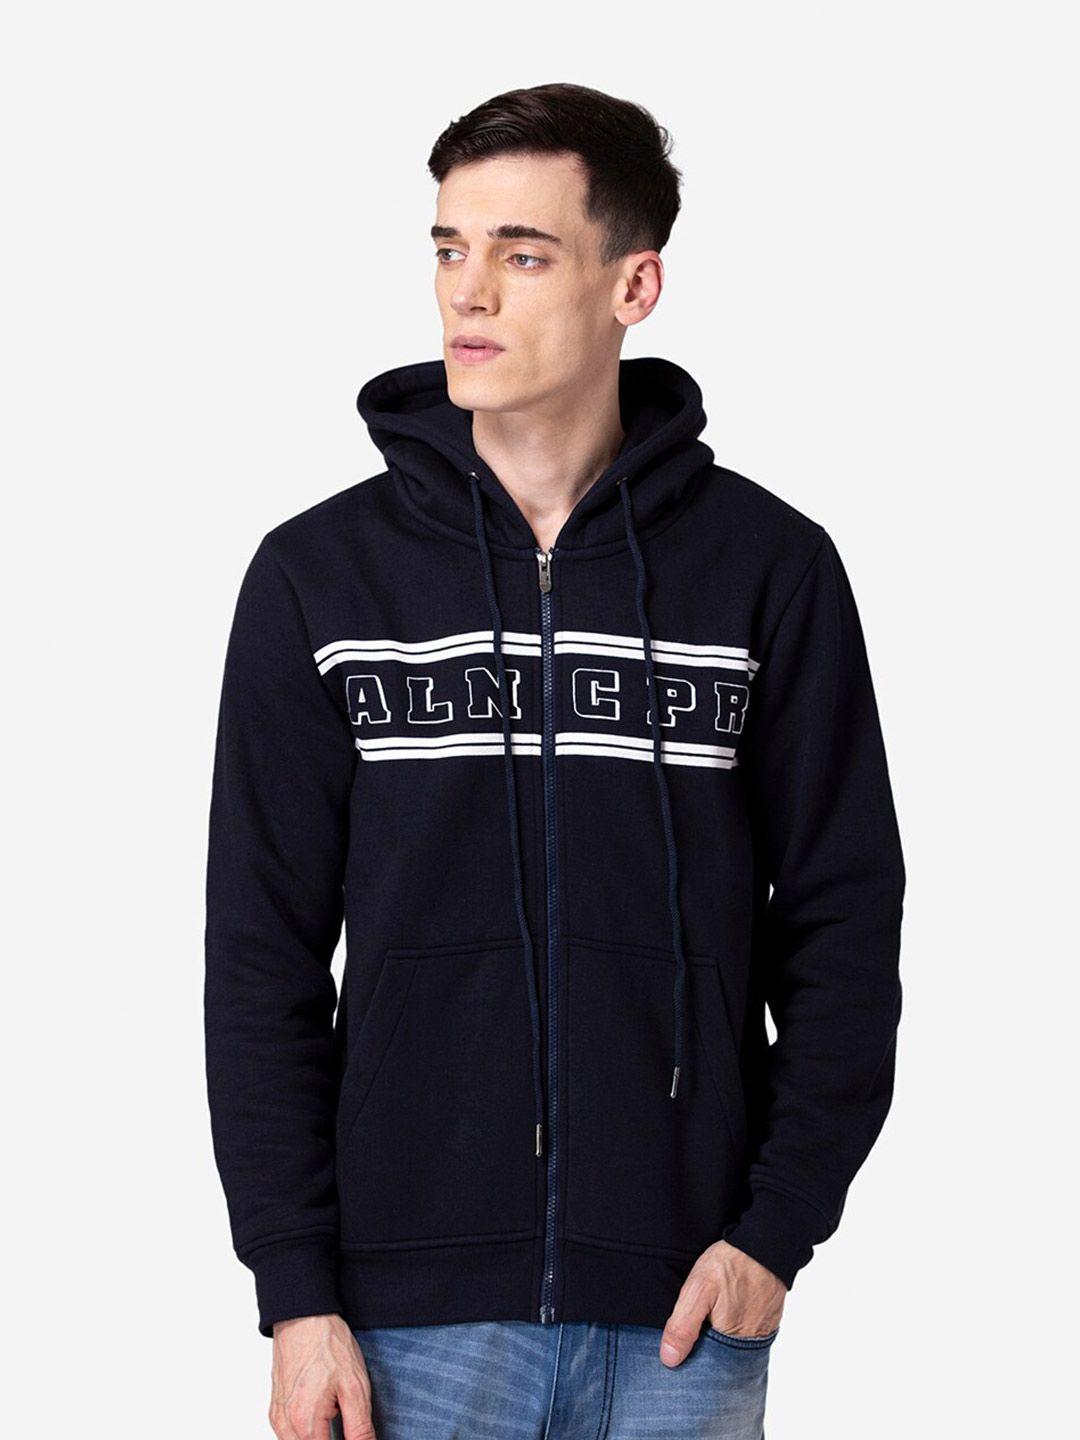 allen-cooper-men-printed-hooded-sweatshirt